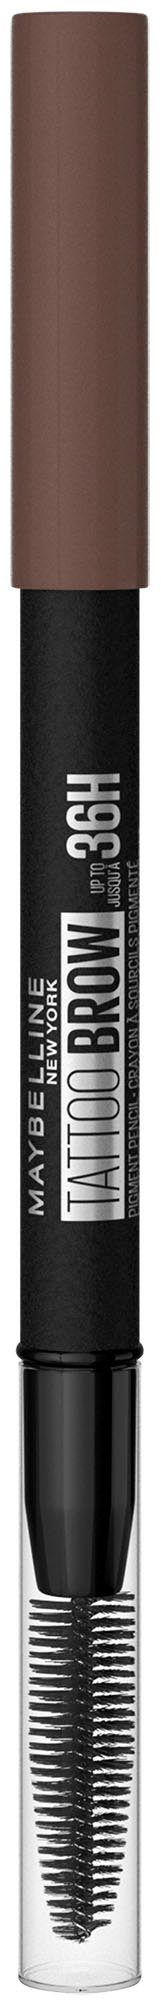 MAYBELLINE NEW mit Brow Brown Formel, YORK Augenbrauen-Stift Tattoo Augen-Make-Up 36H, Bürste, Deep wasserfeste 7